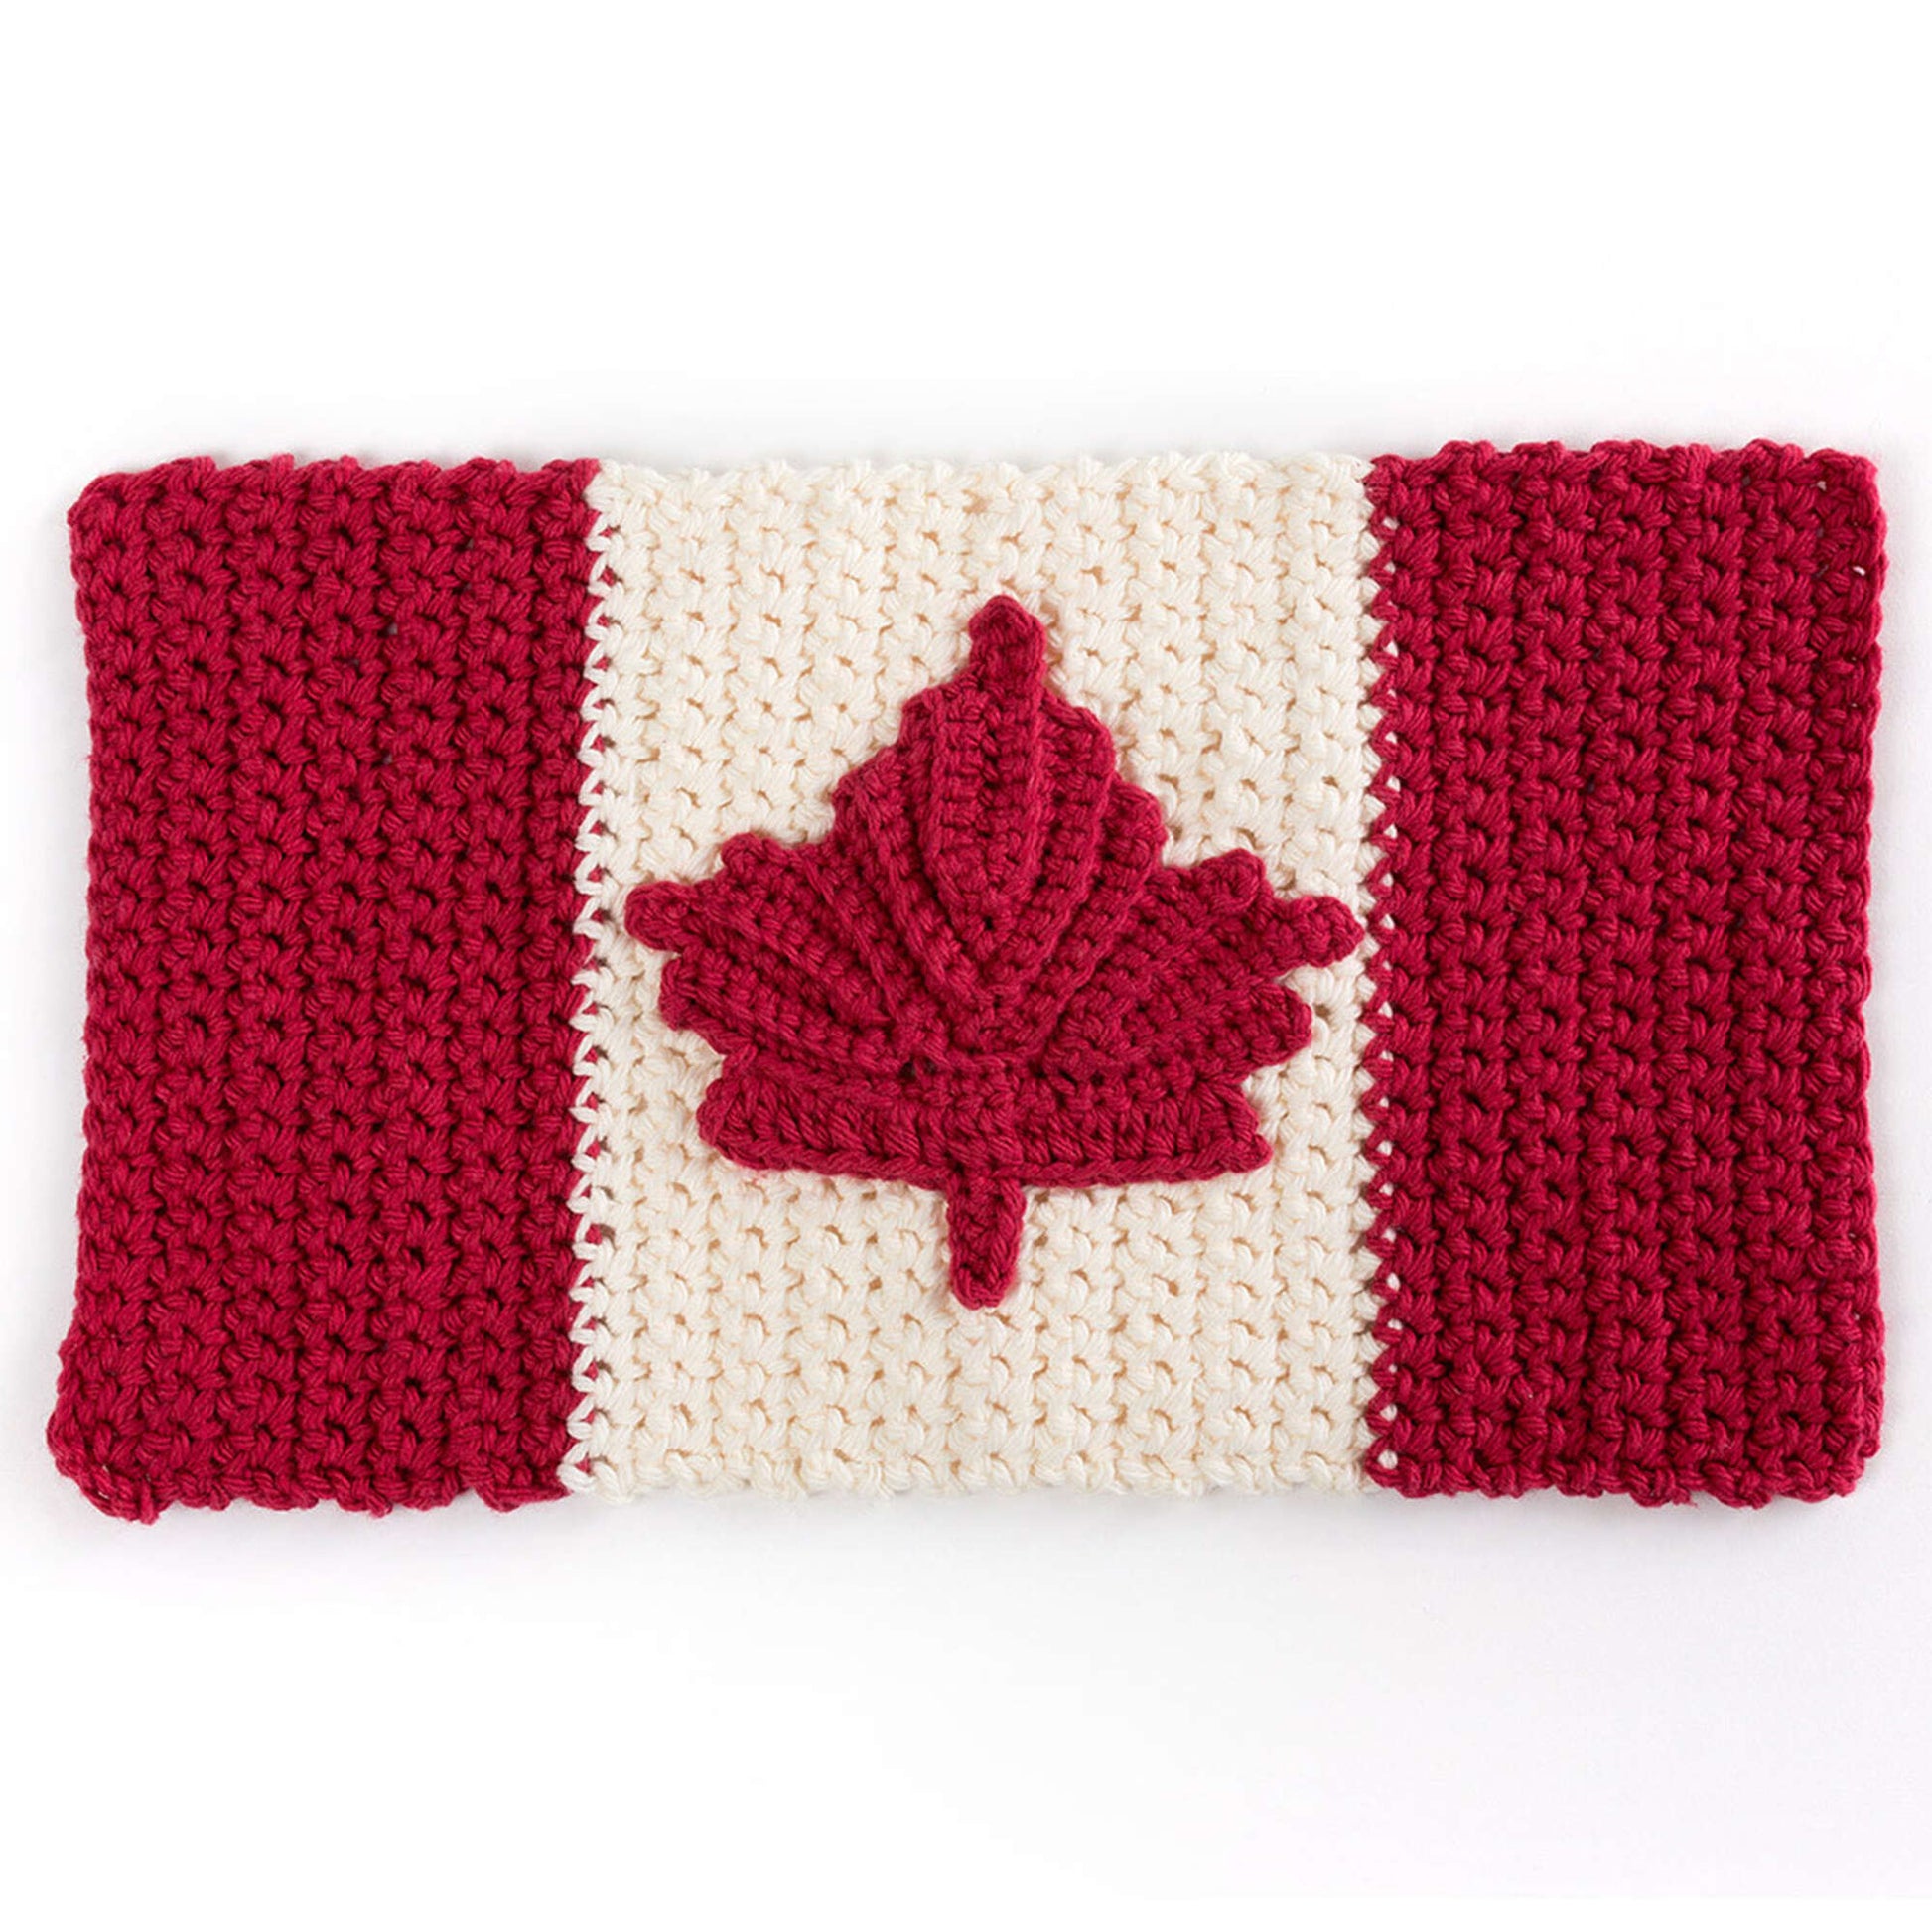 Free Lily Sugar'n Cream Oh Canada Crochet Dishcloth Pattern